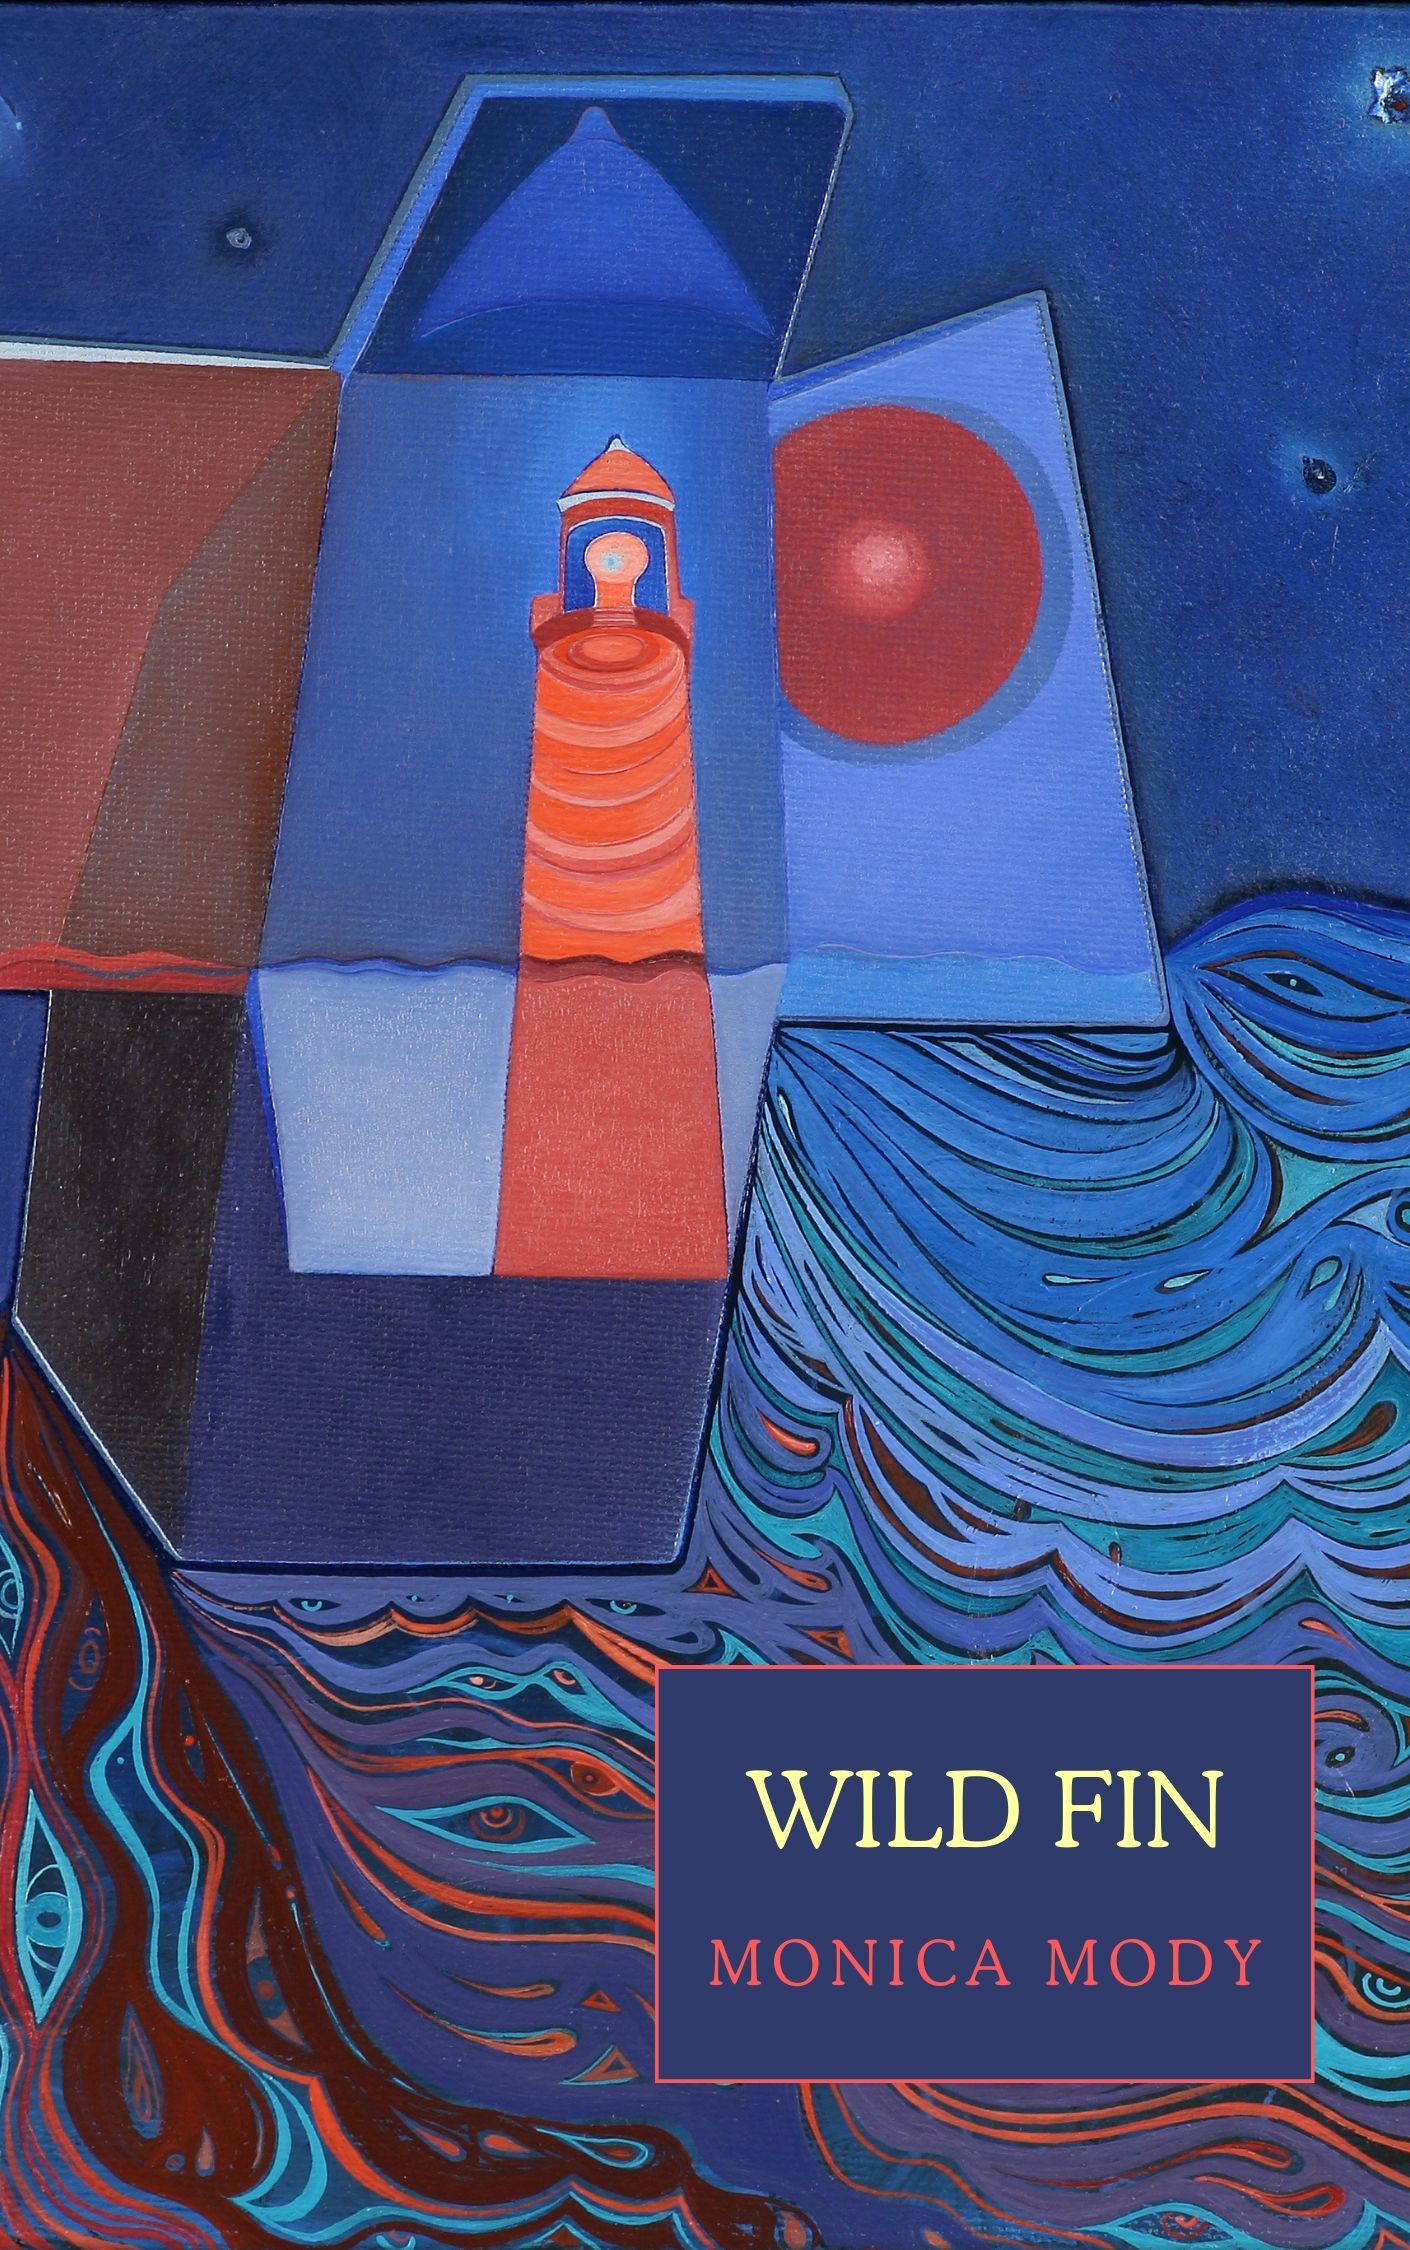 Wild Fin by Monica Mody book cover